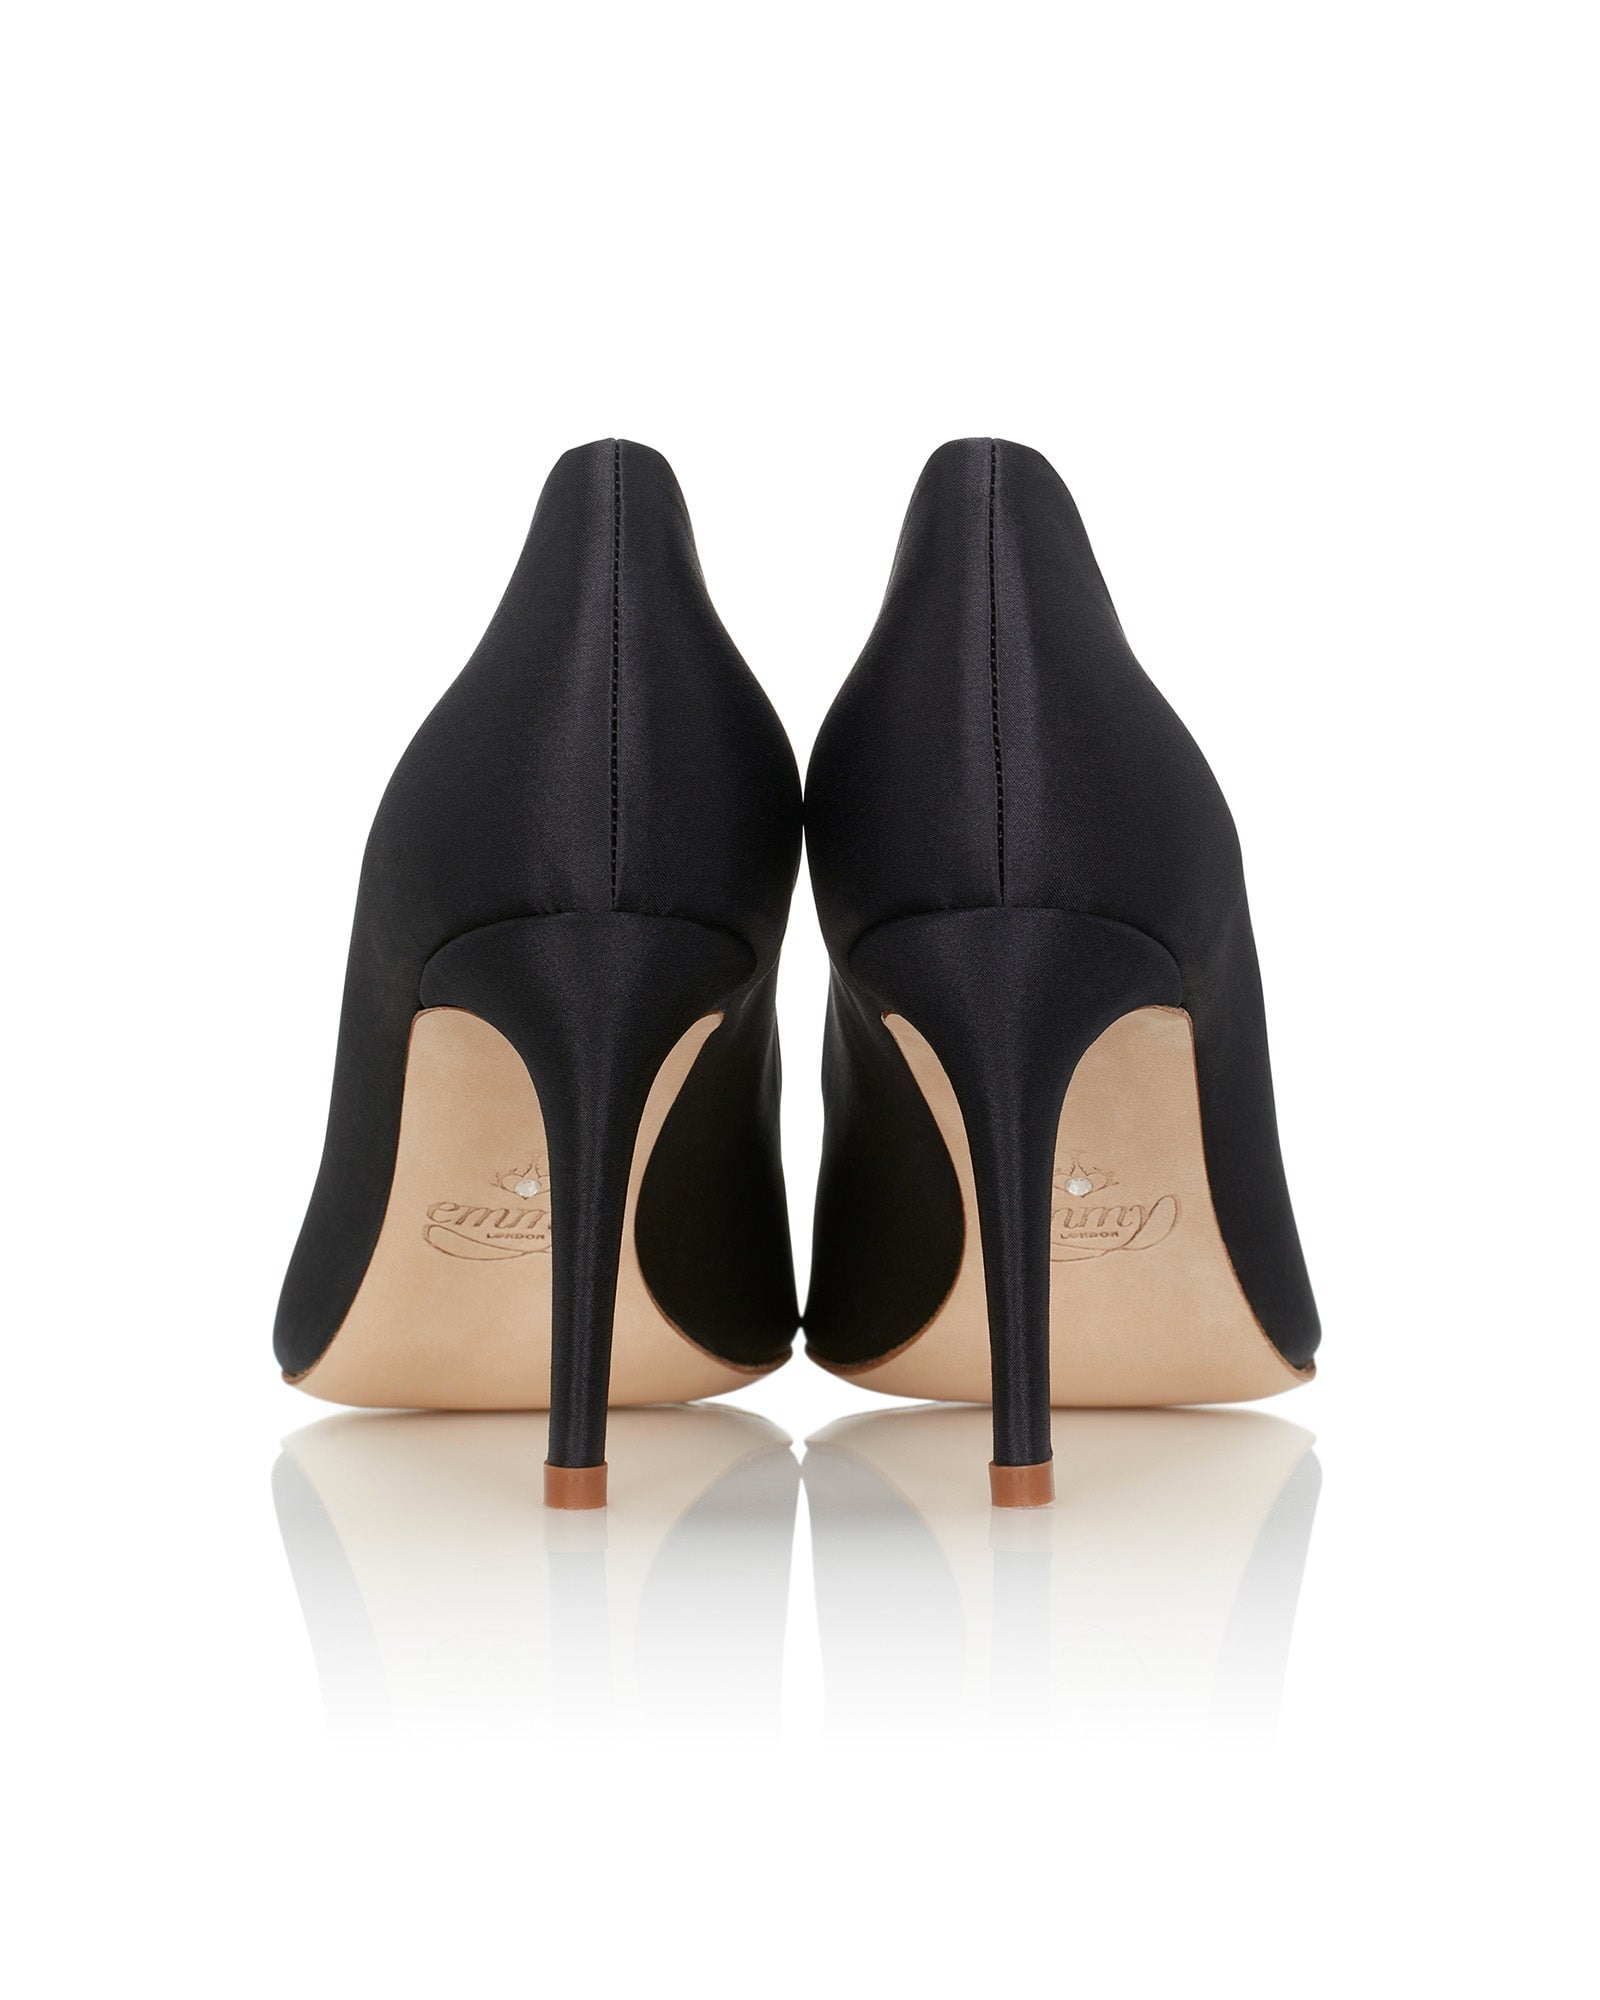 Claudia Jet Black Satin Fashion Shoe Jet Black Court Shoe  image